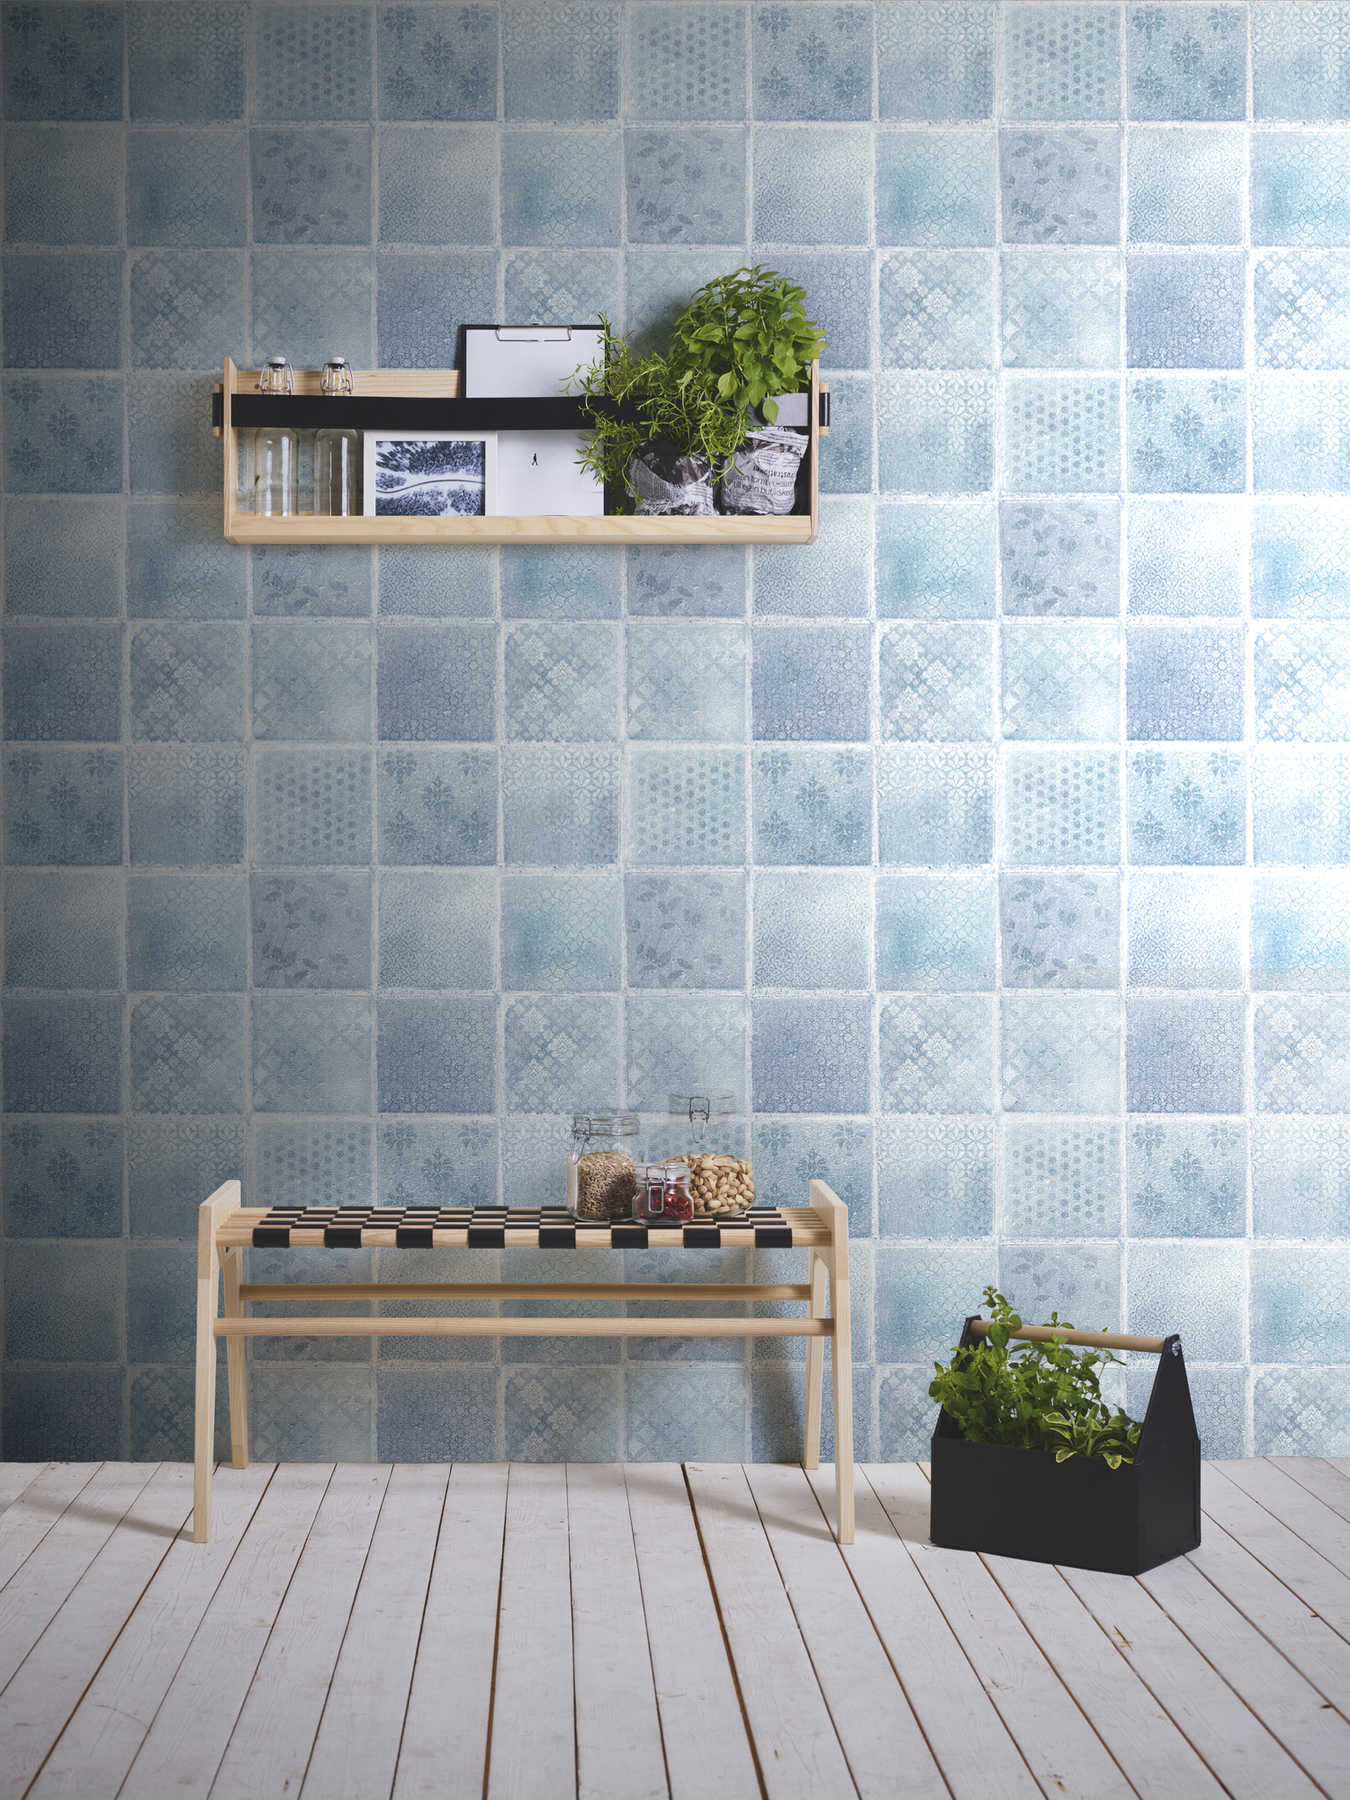             Papel pintado con aspecto de mosaico y azulejos - azul, gris, crema
        